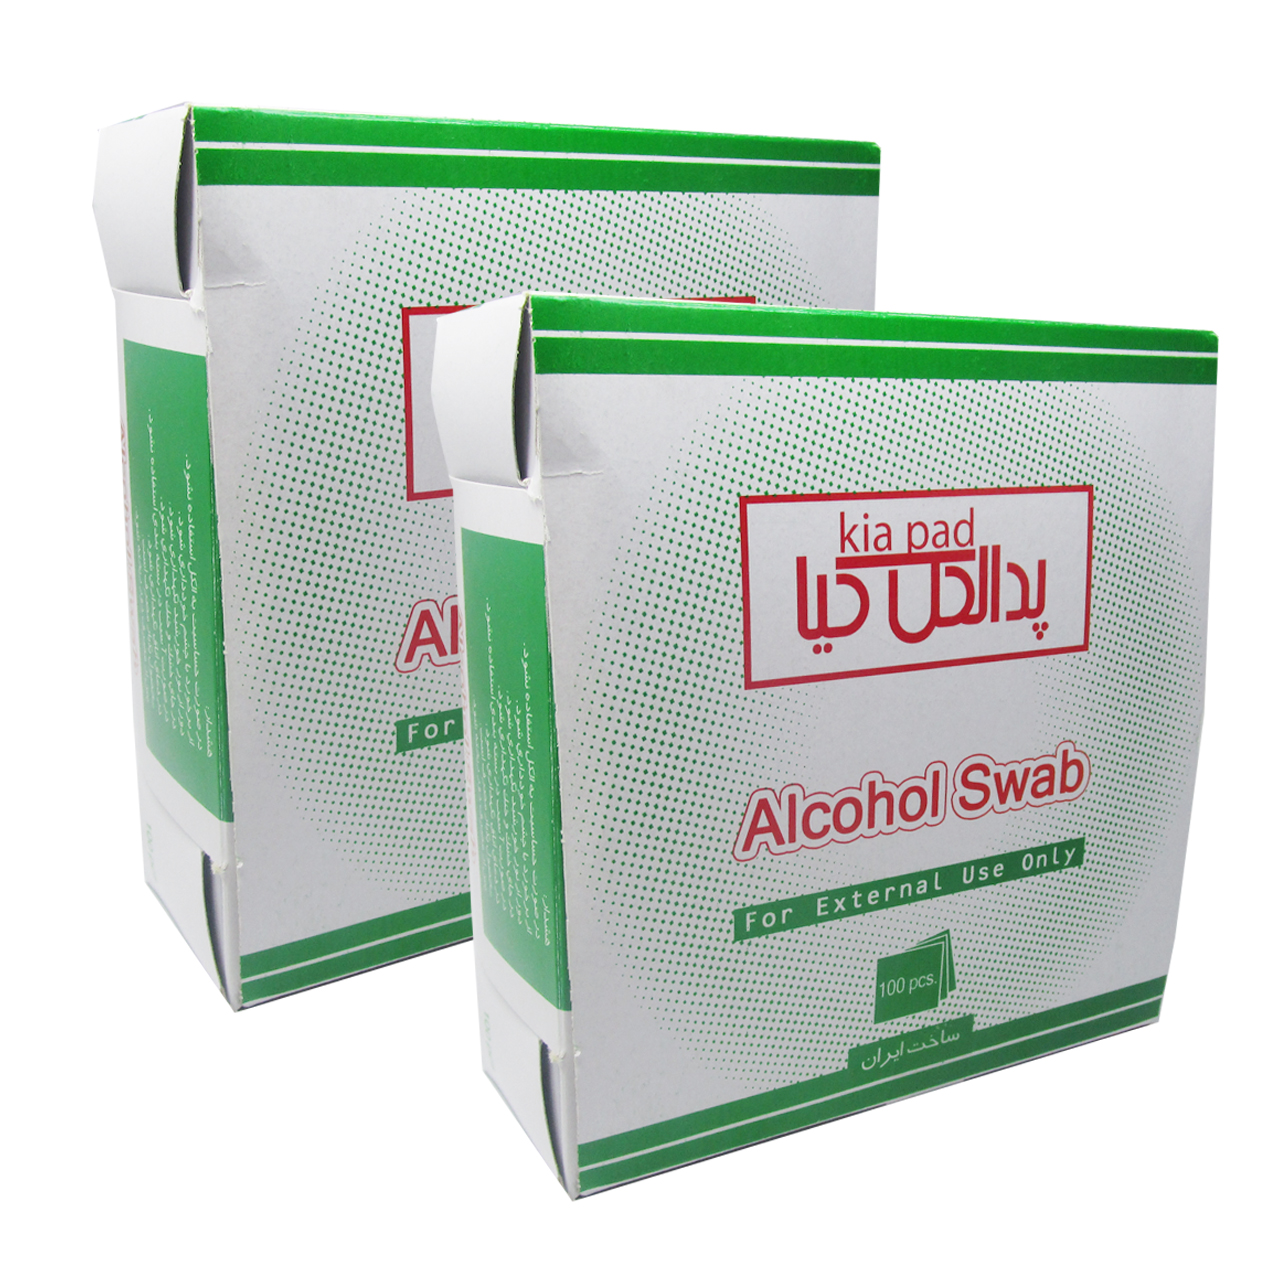 پد الکل کیا مدل Swab وزن 50 گرم بسته 100 عددی مجموعه 2 بسته ای